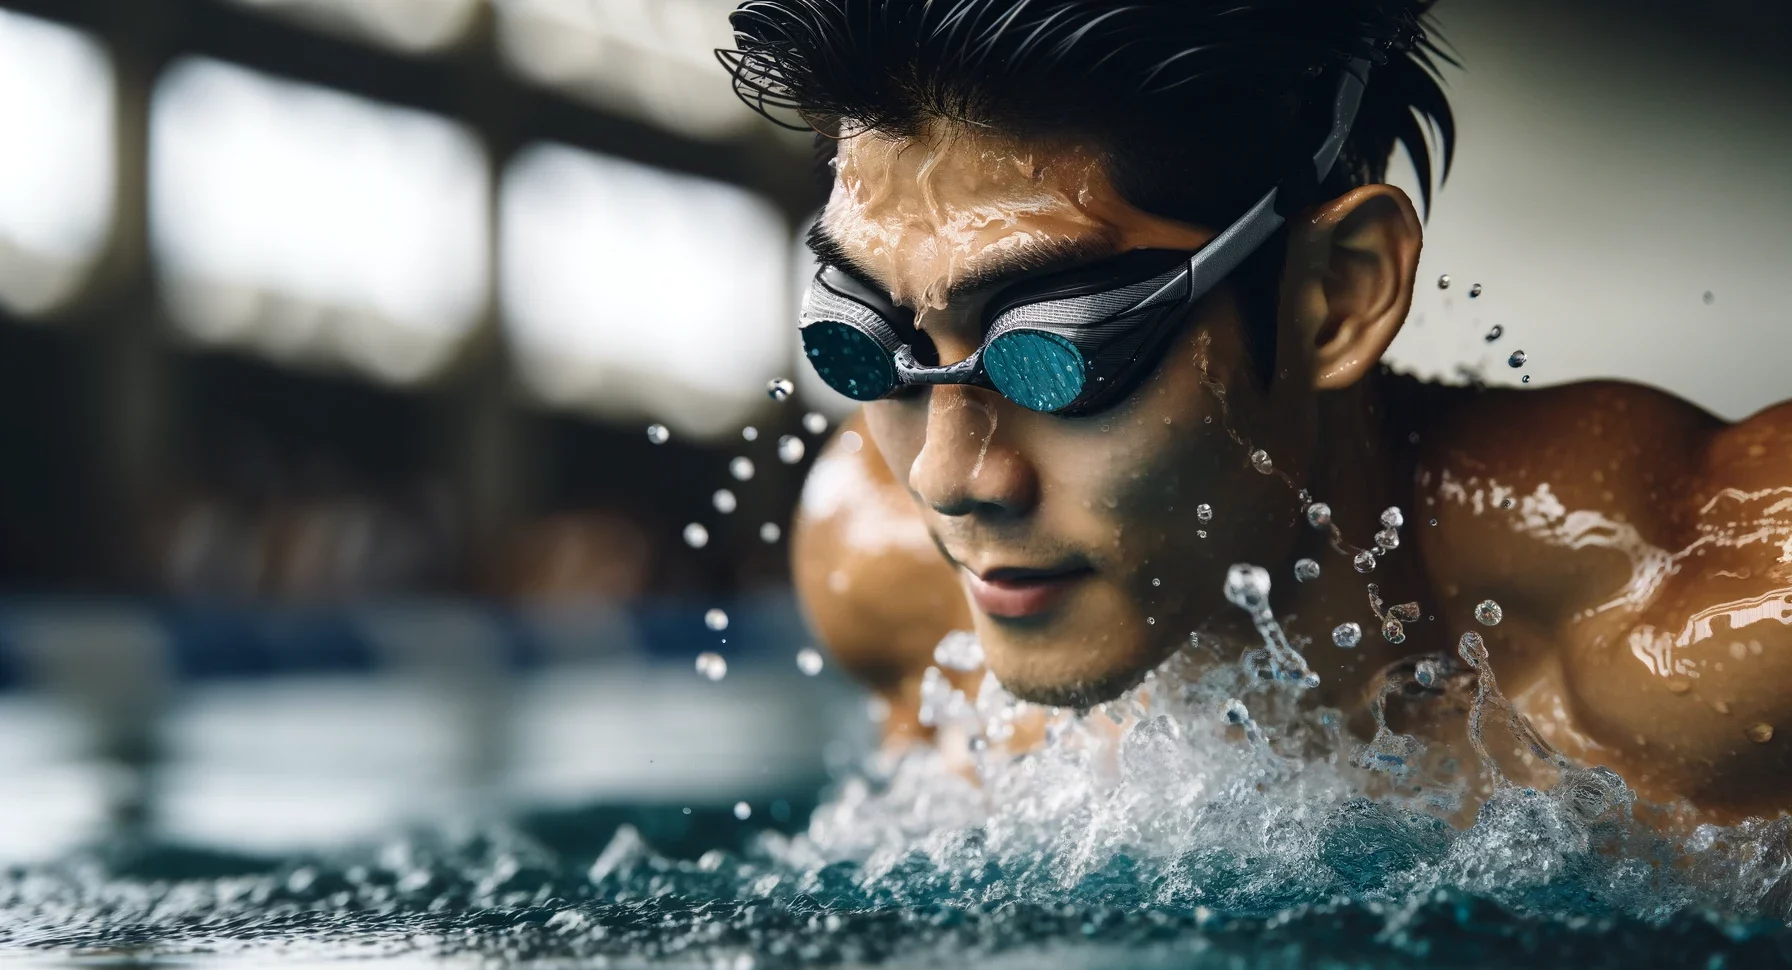 Schwimmer mit Fokus auf seine Schwimmbrille, die ein schlankes Design und getönte Gläser hat.